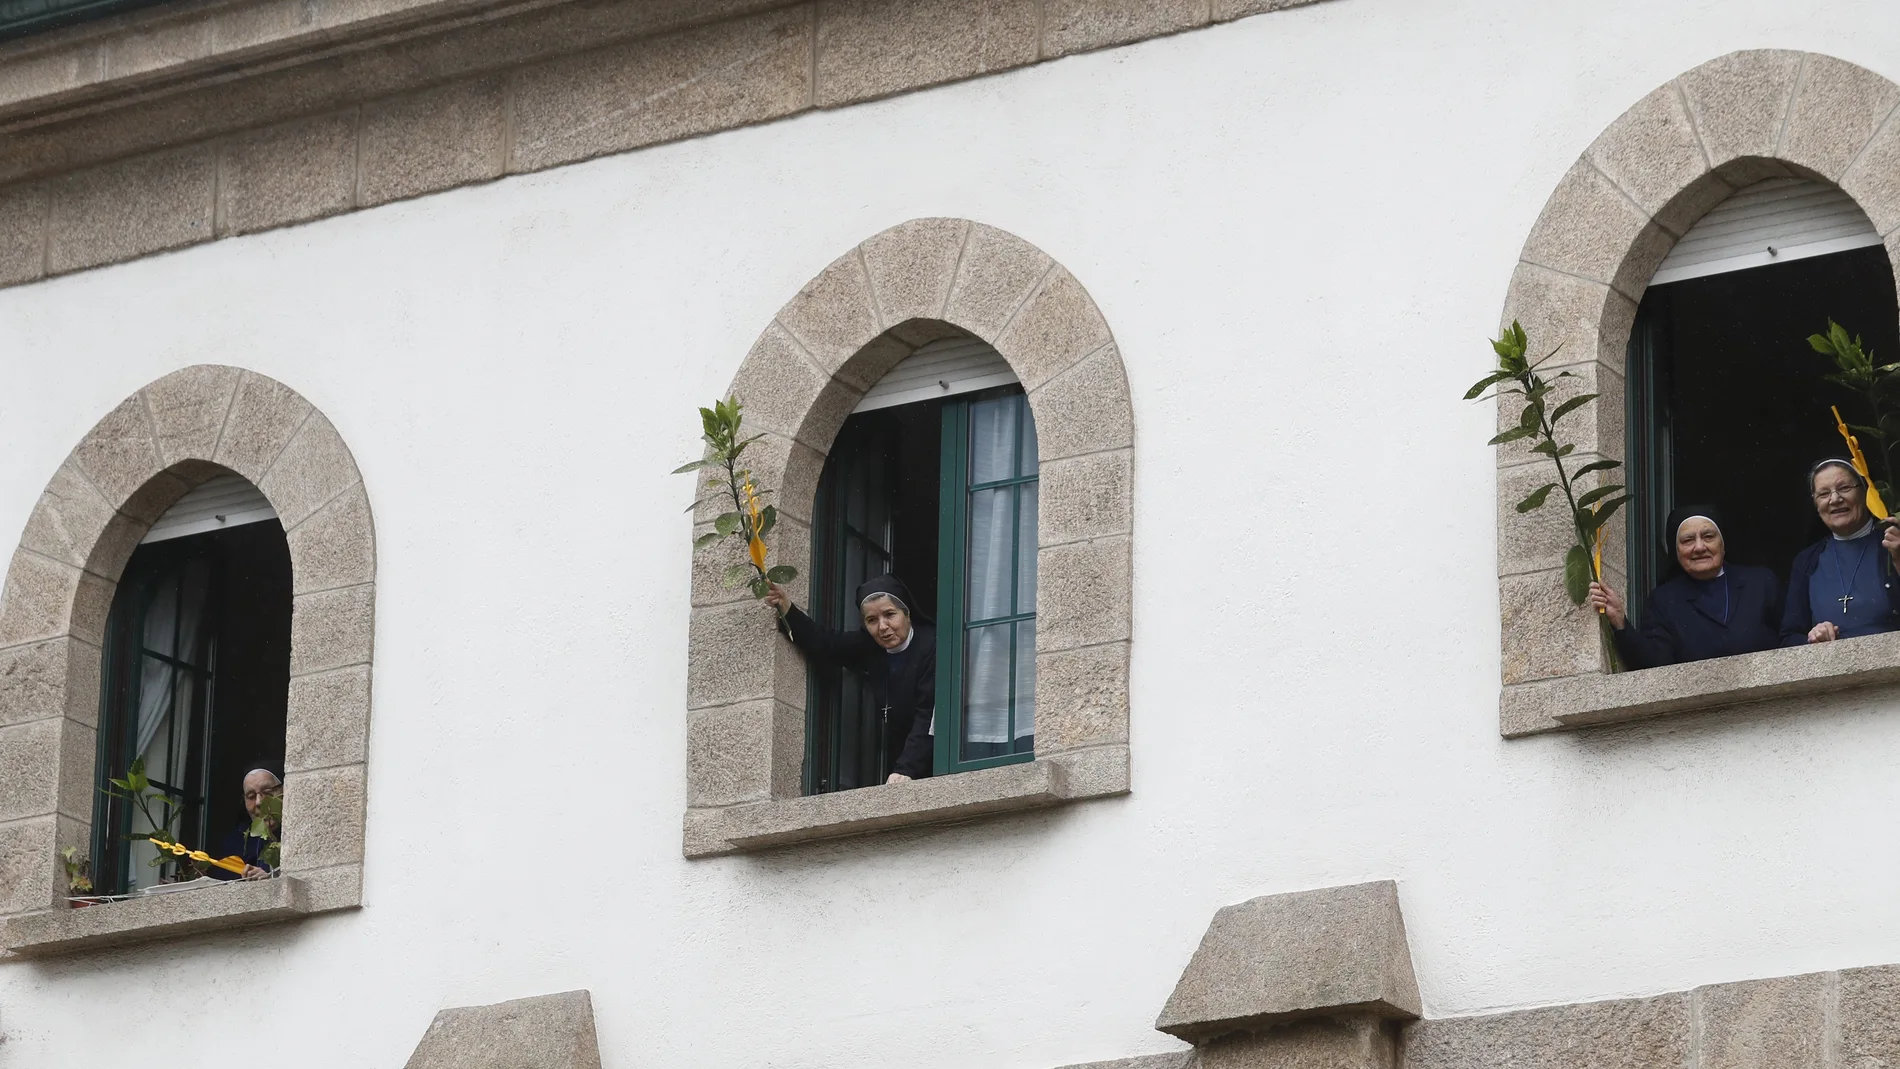 Religiosas salen al balcón con ramos y palmas en domingo de Ramos, en confinamiento.